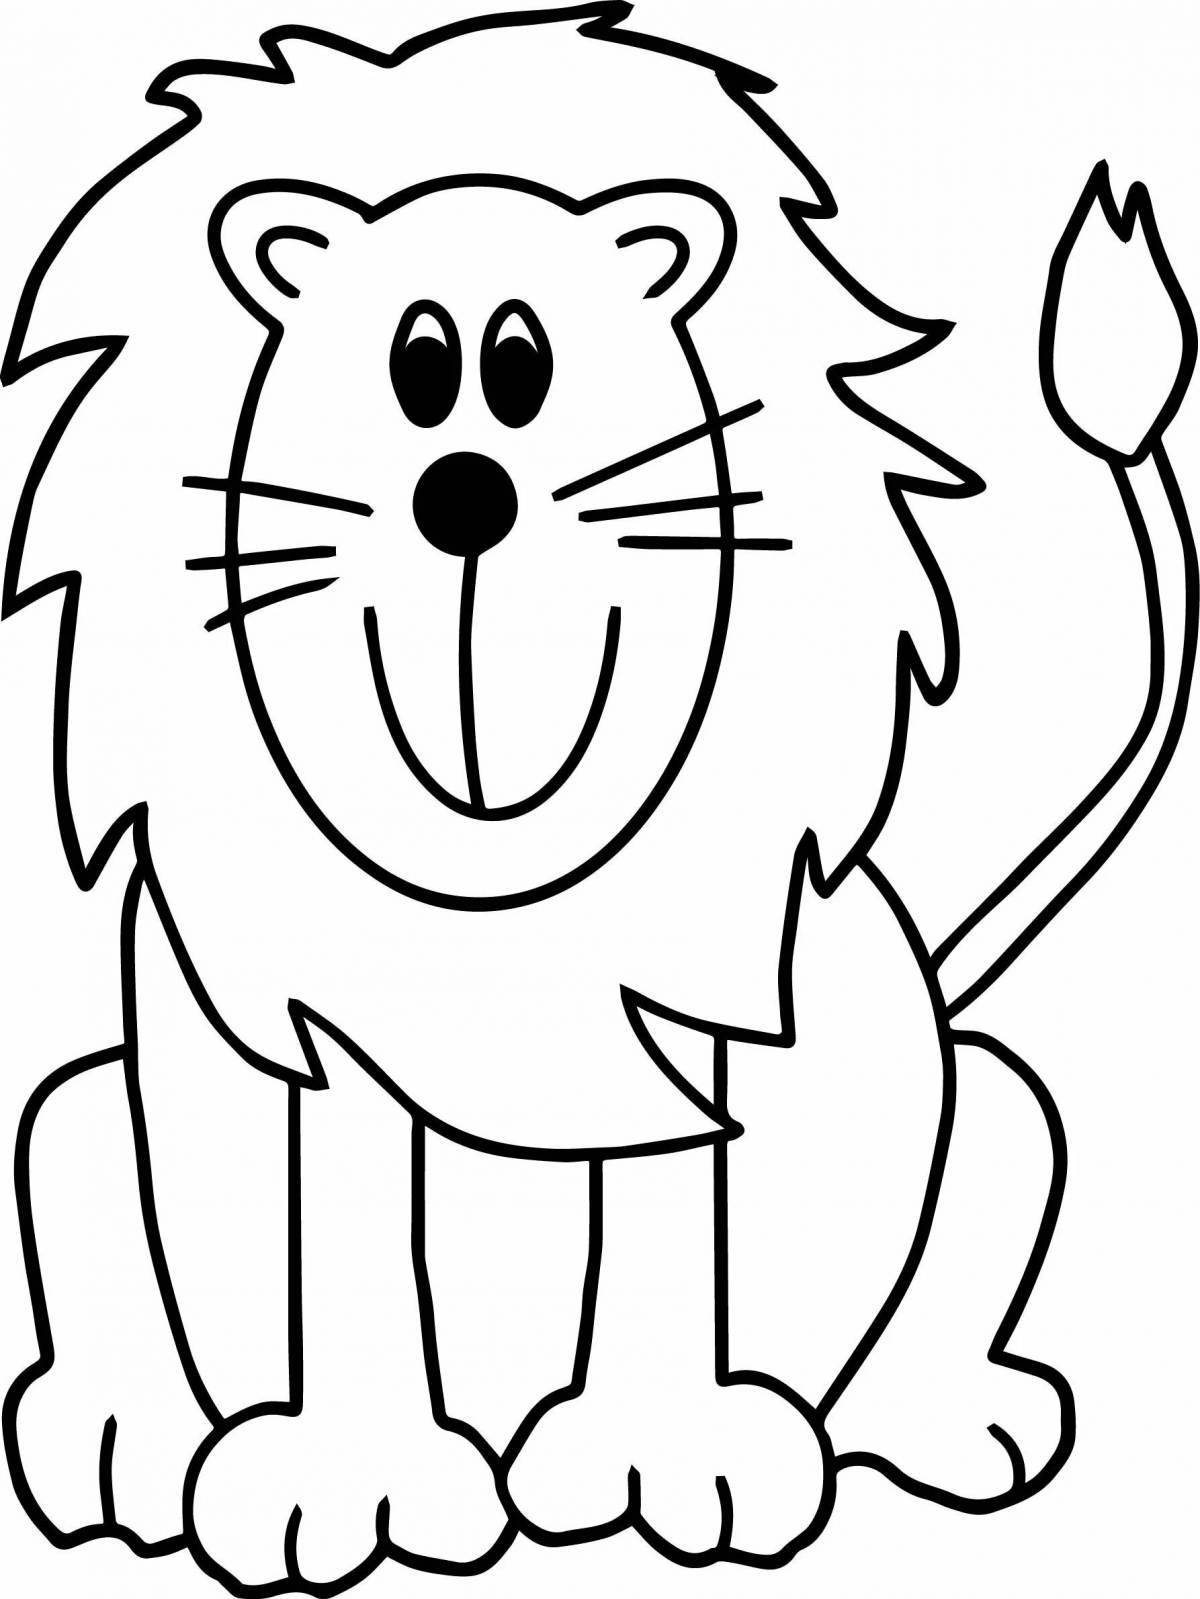 Раскраска благородный лев